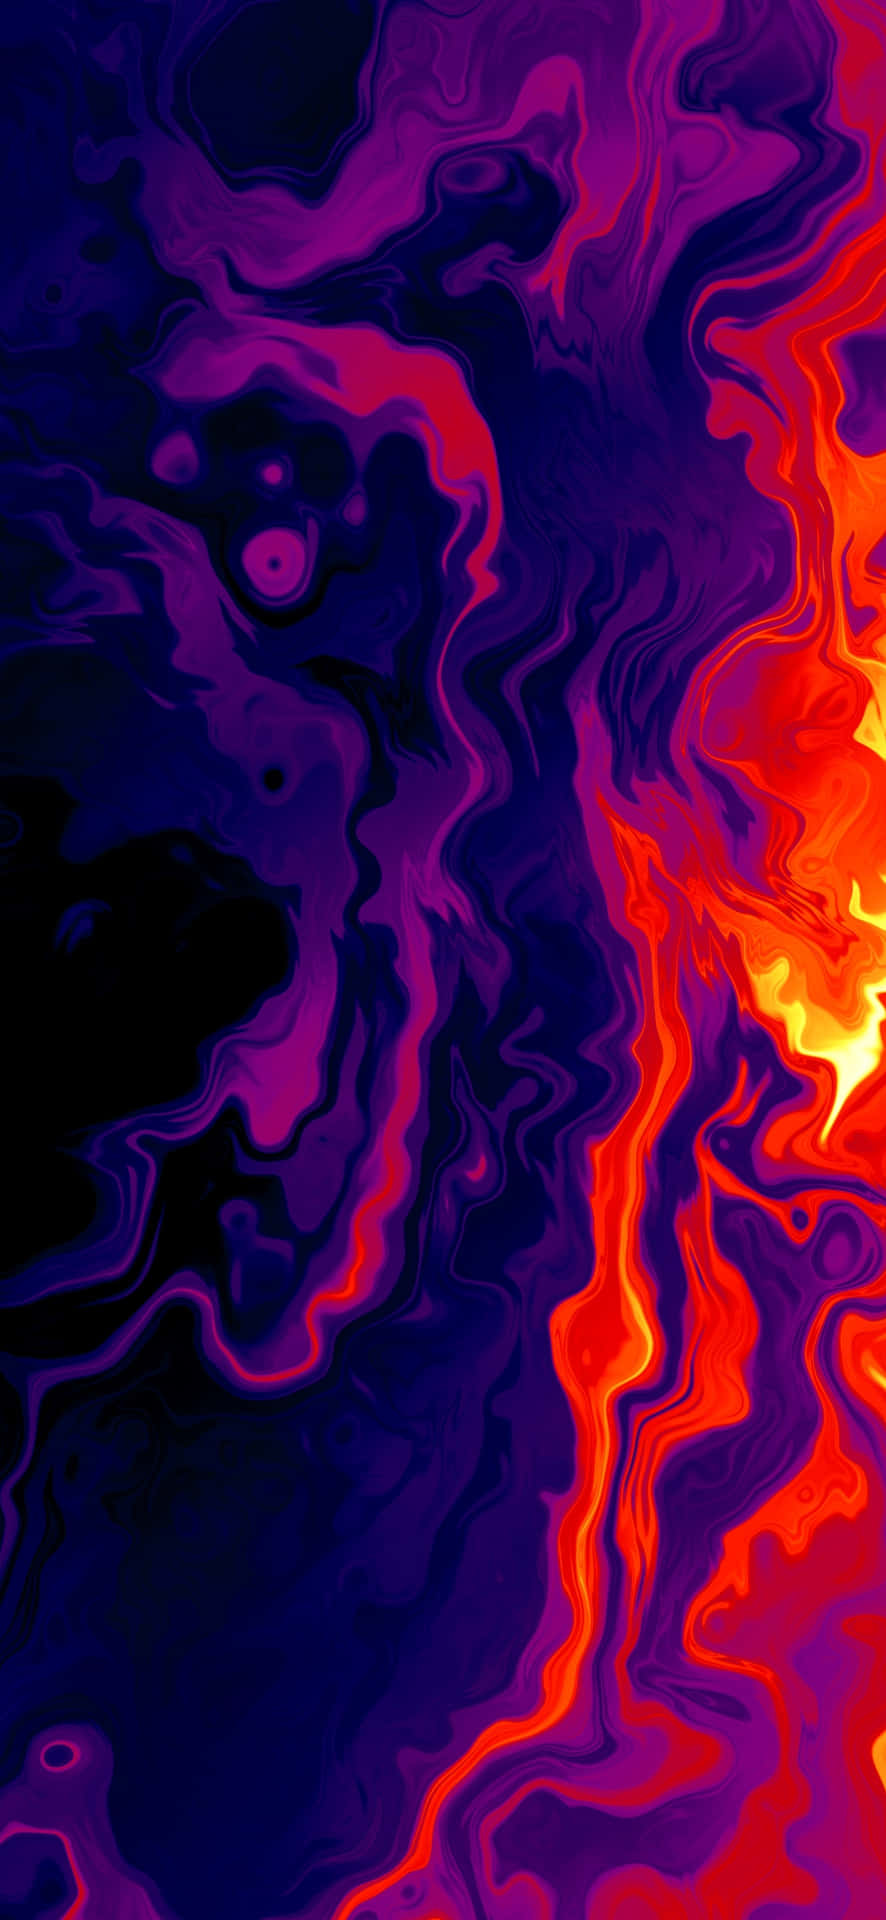 Abstract Heatwave Art Wallpaper